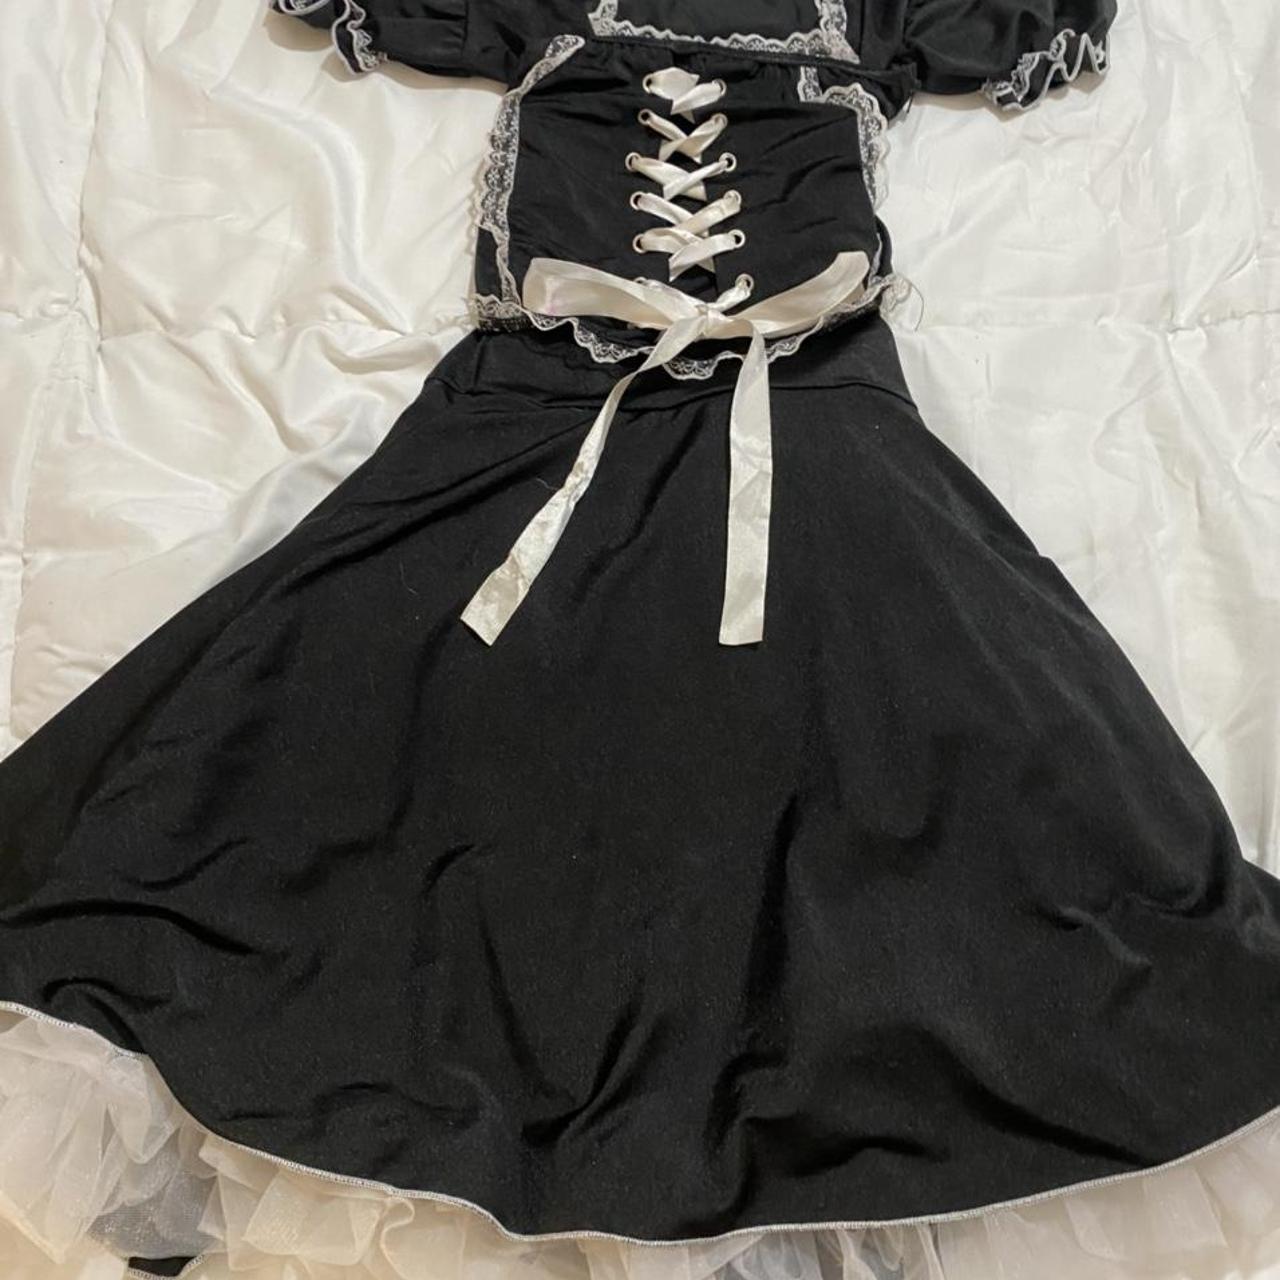 black milkmaid dress Size M, fits S too but a... - Depop